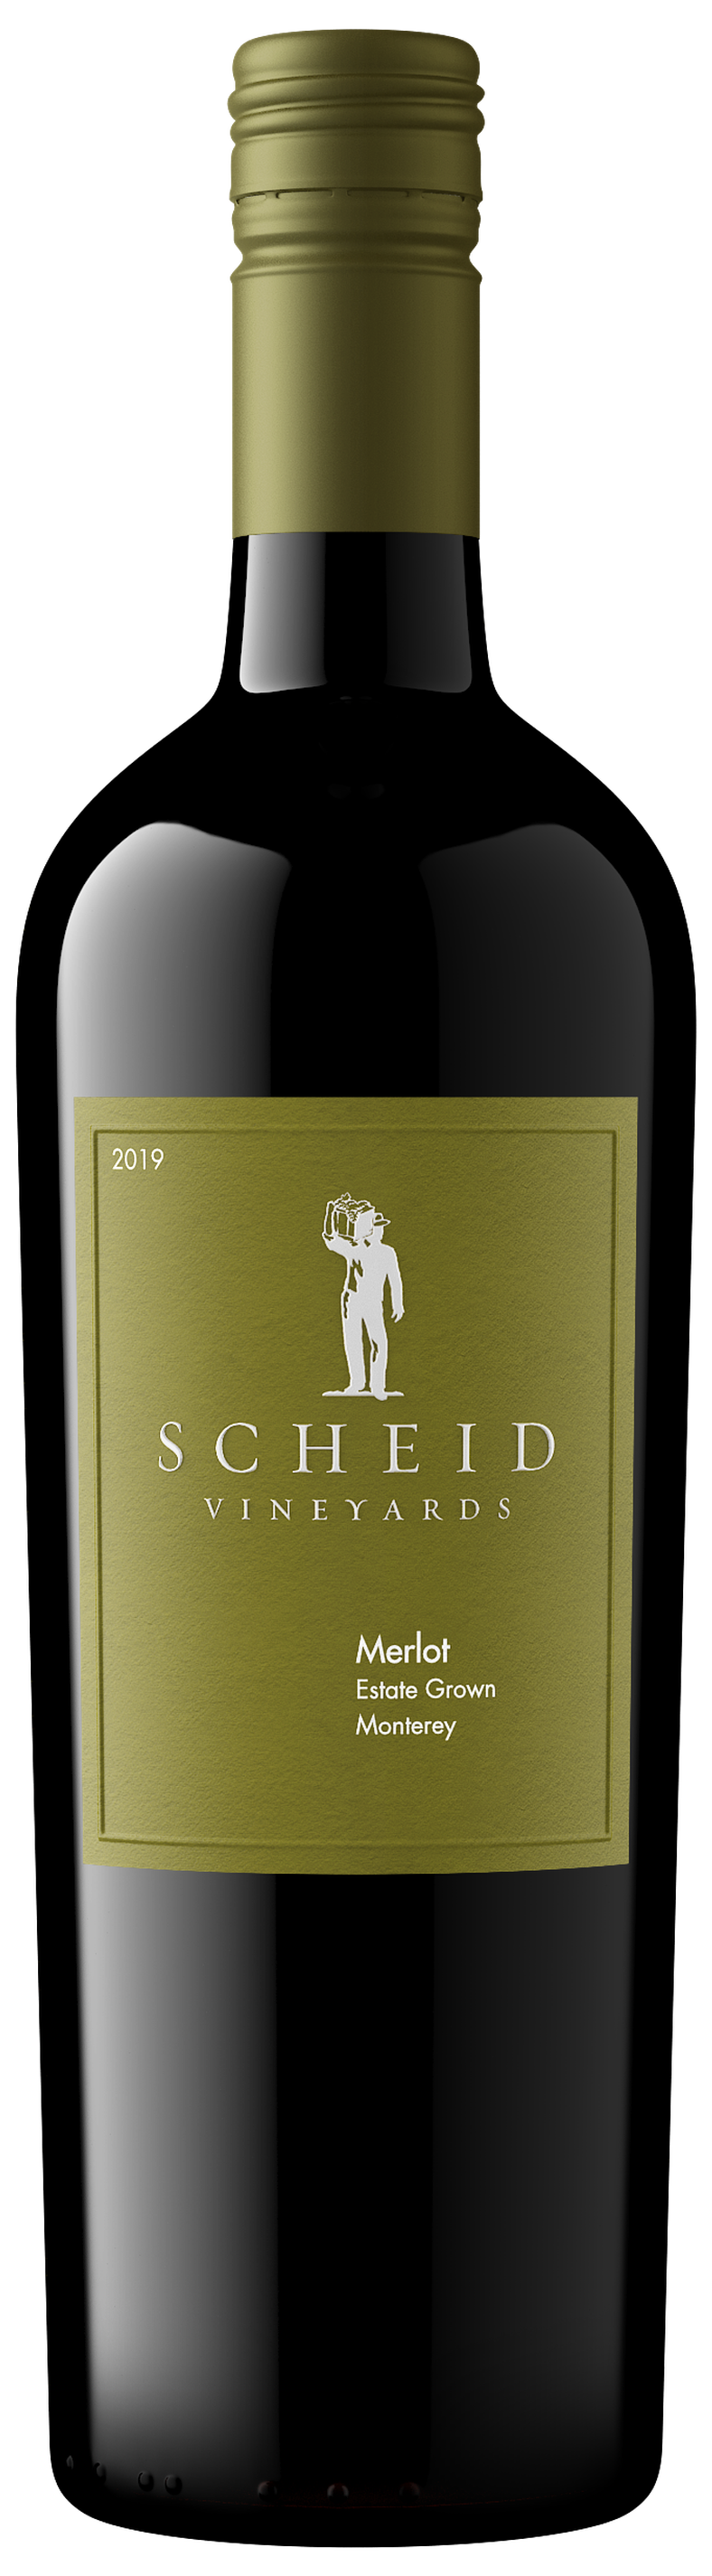 - Products - Vineyards Merlot Scheid 2019